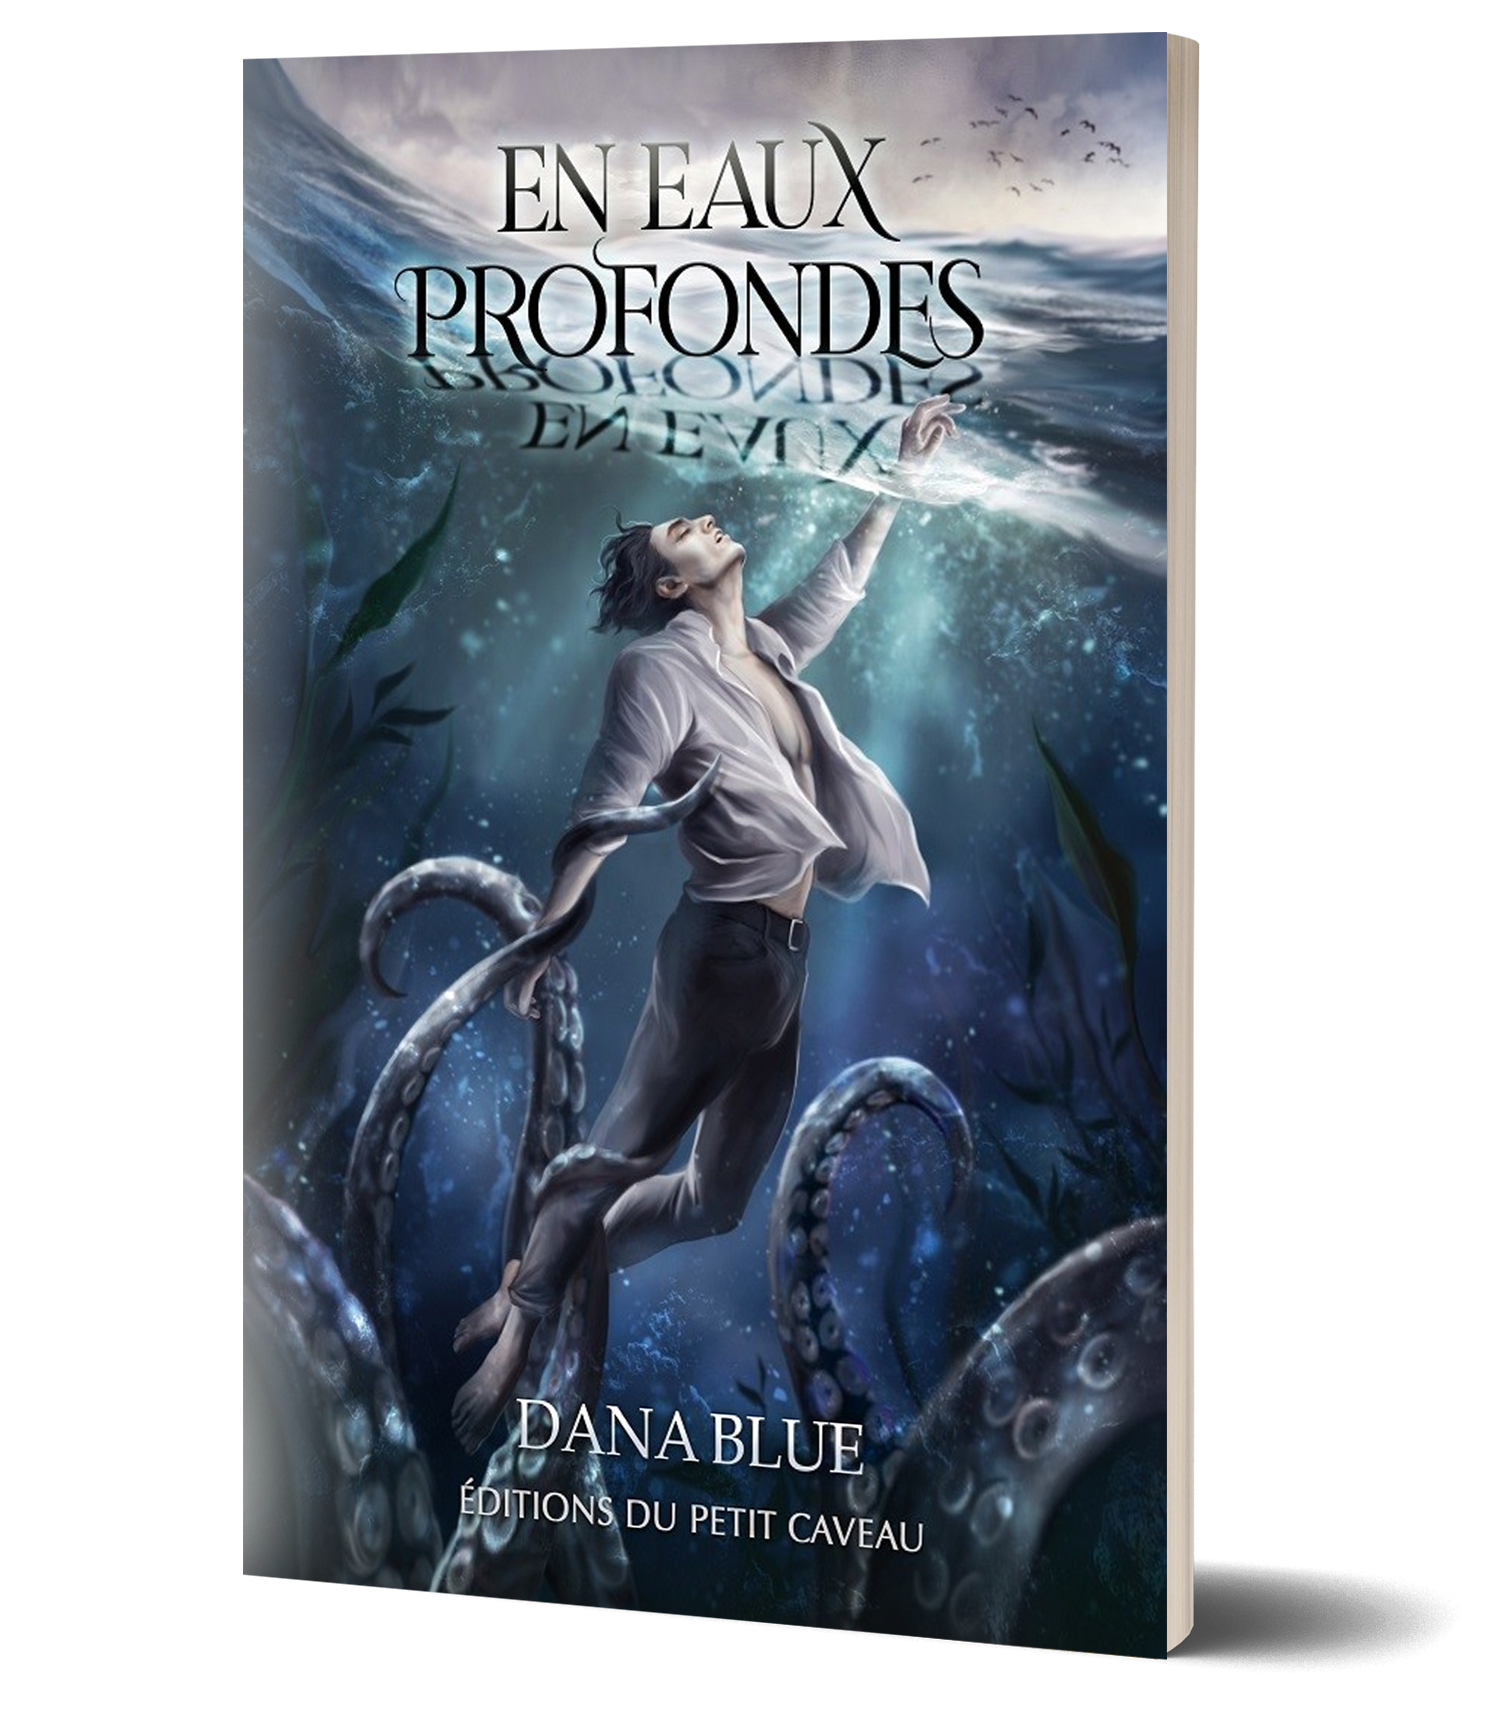 Couverture du roman "En eaux profondes" présentant un homme sous l'eau capturé par des tentacules.